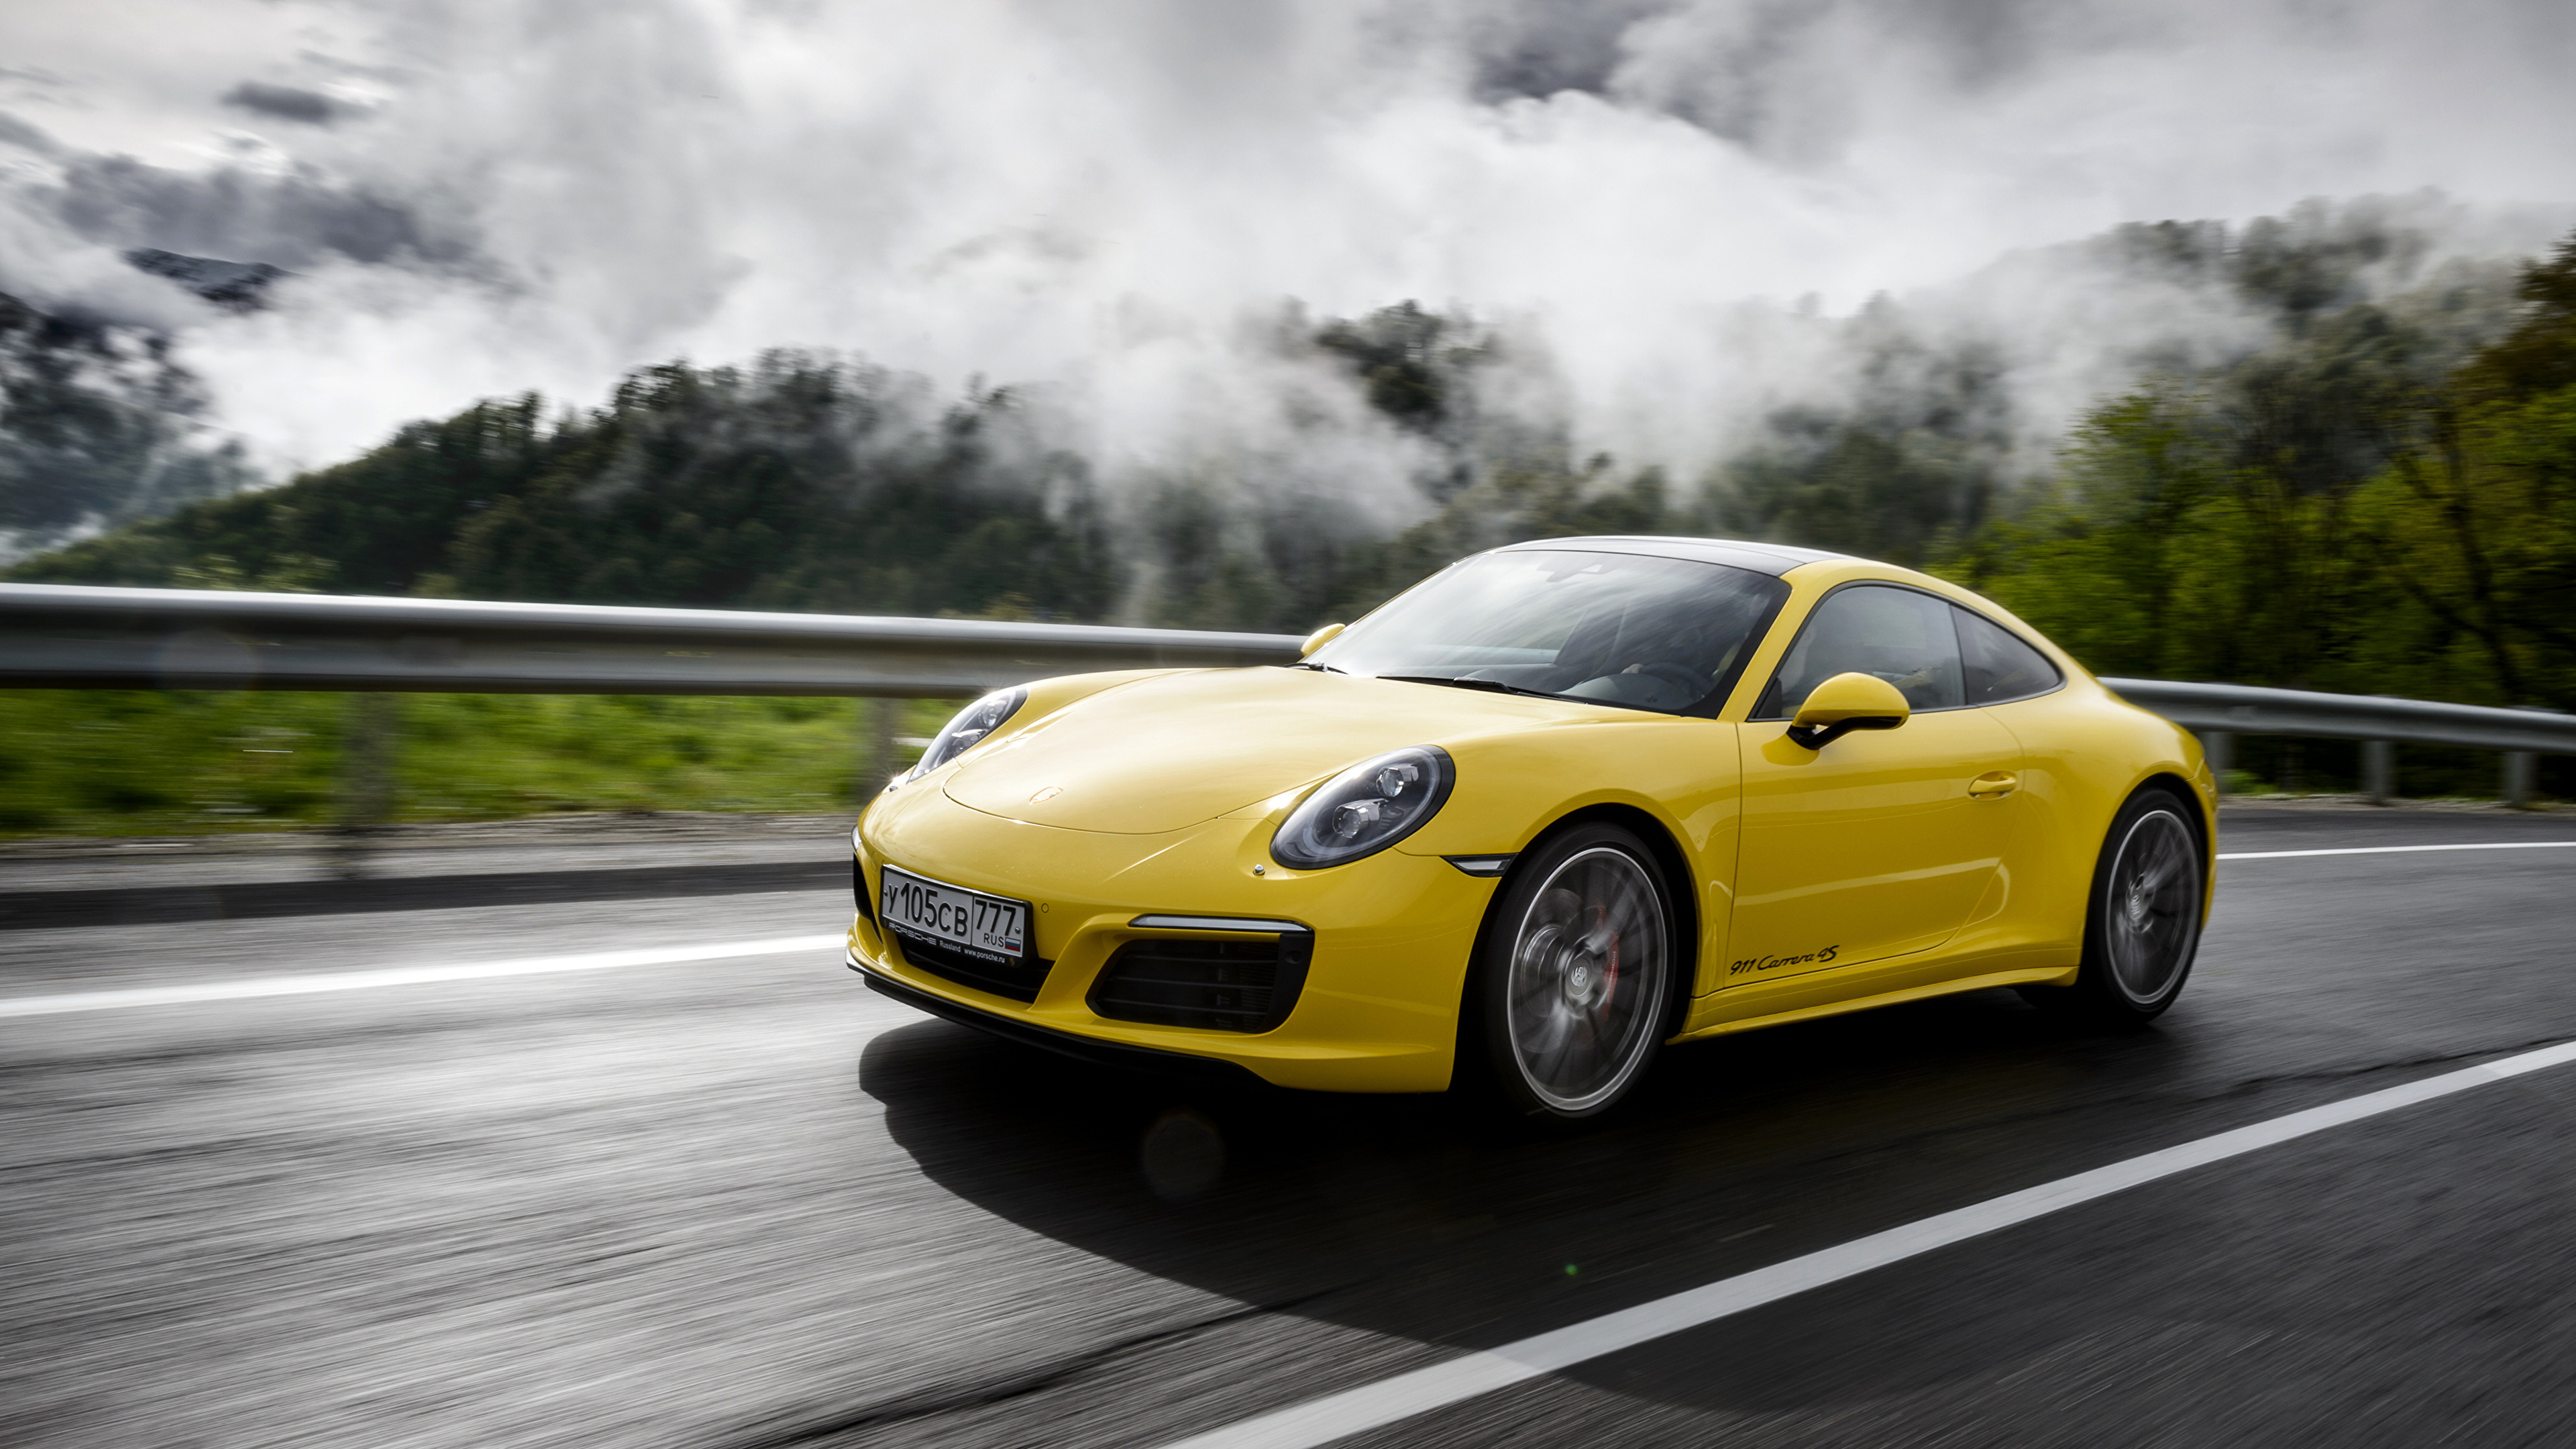 Gelber Porsche 911 Tagsüber Unterwegs. Wallpaper in 3840x2160 Resolution